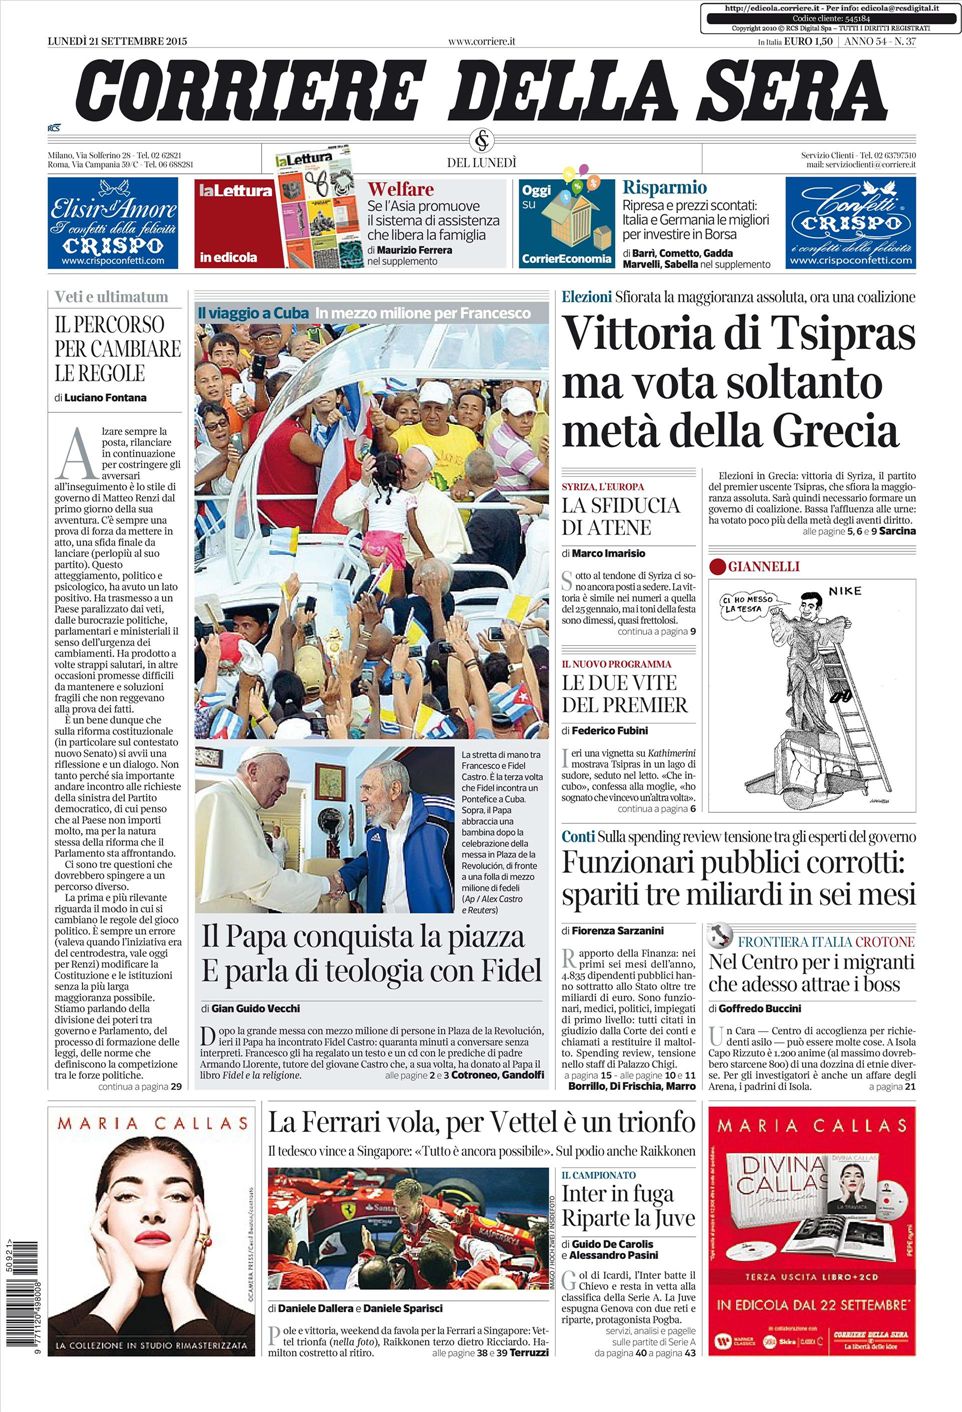 Le prime pagine dei quotidiani che sono in edicola oggi 21 settembre 2015 Secolo d'Italia